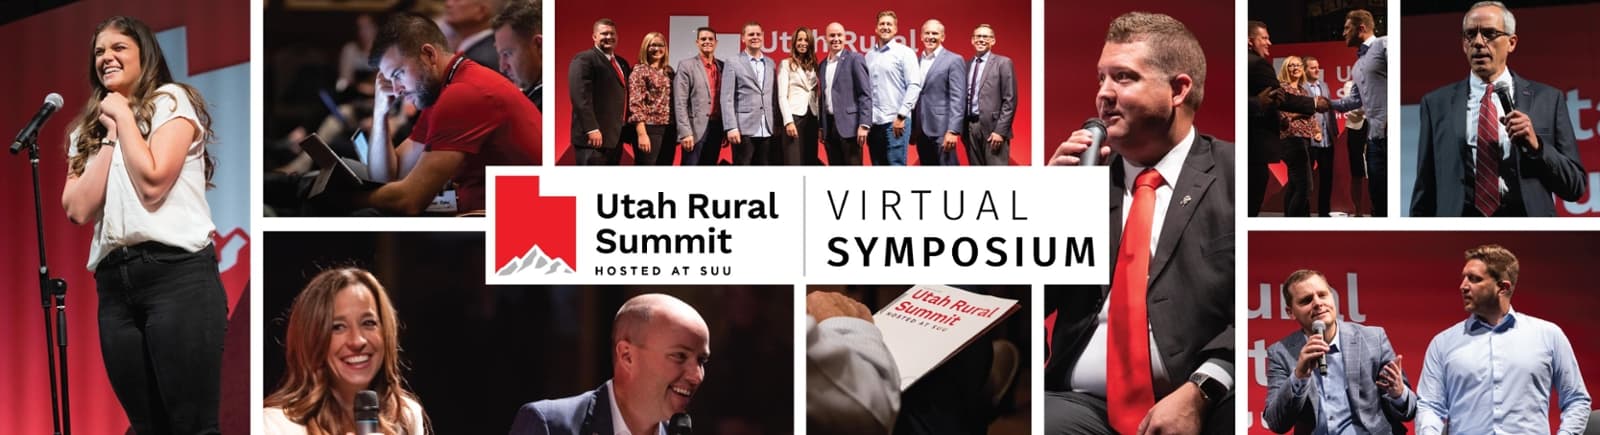 Virtual Symposium at the Utah Rural Summit